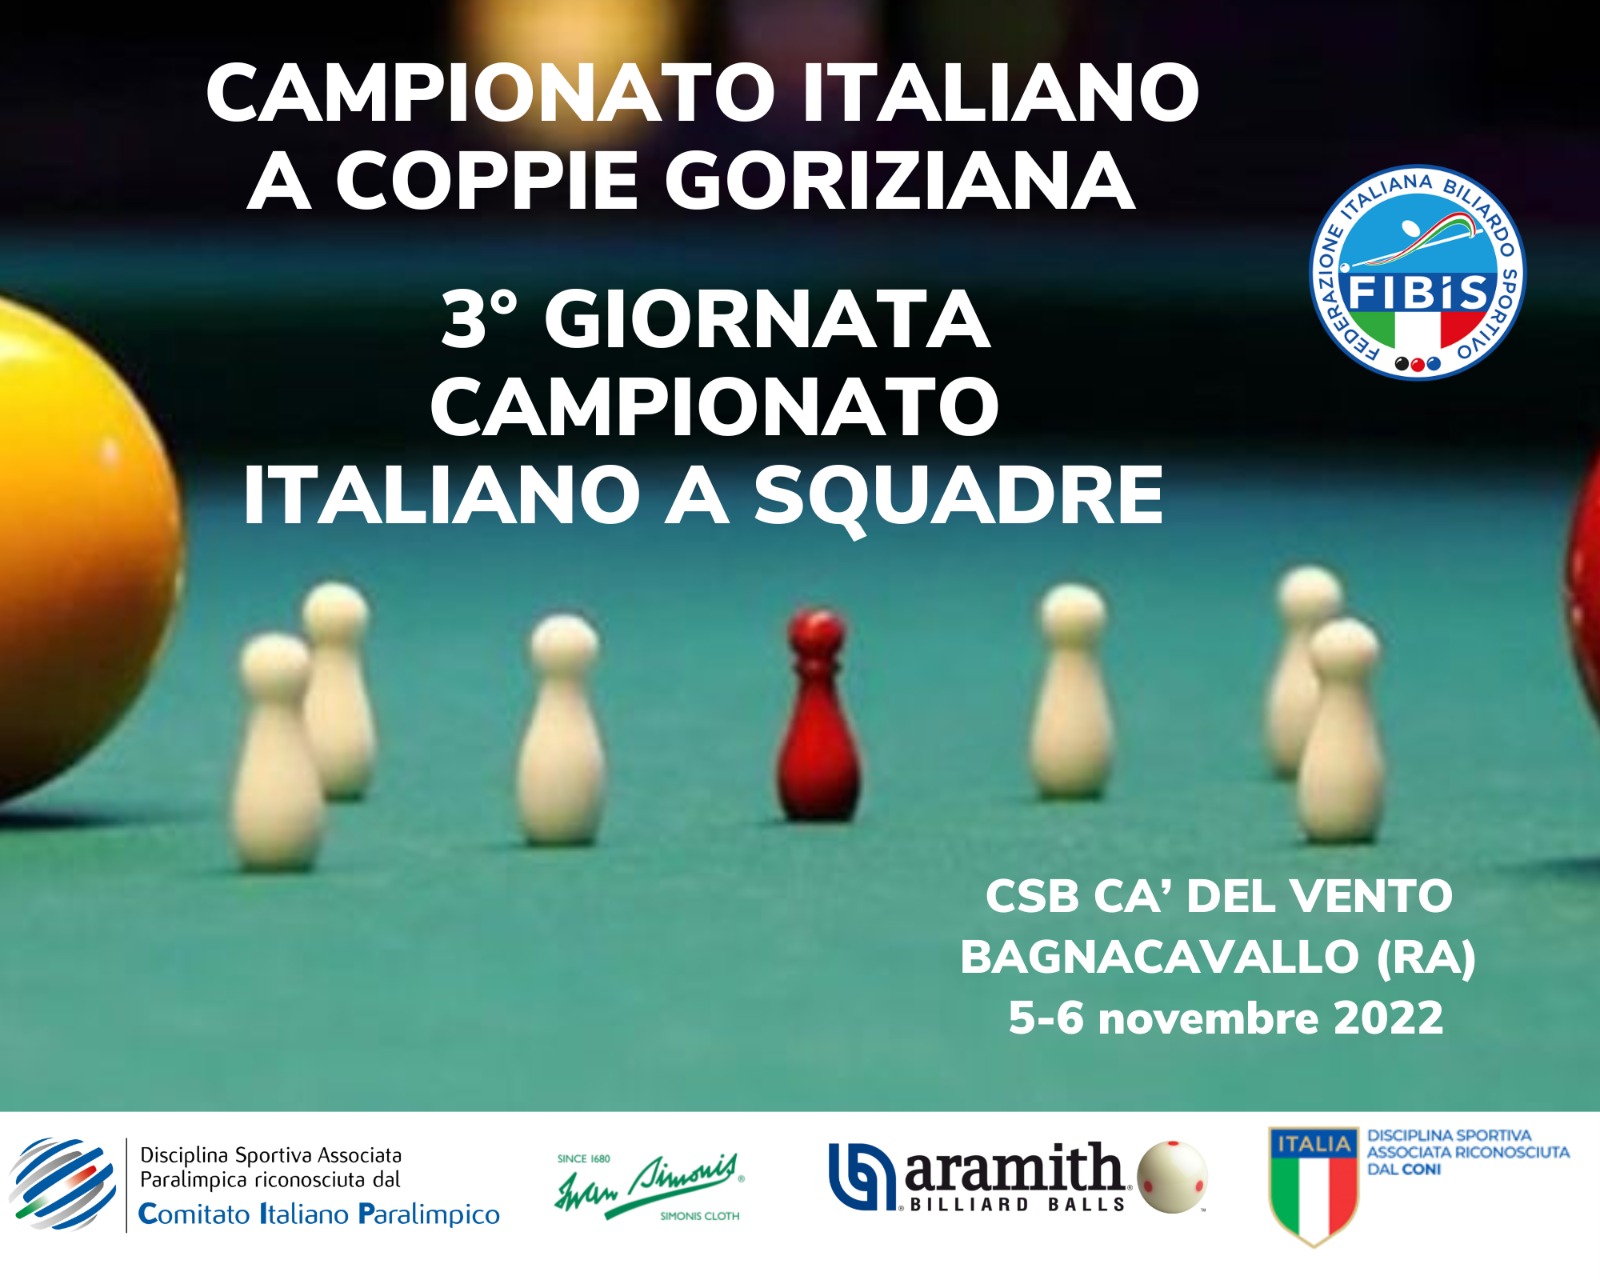 DOPPIO APPUNTAMENTO A BAGNACAVALLO: 3^ GIORNATA CAMPIONATO ITALIANOA SQUADRE E CAMPIONATO ITALIANO A COPPIE DI GORIZIANA